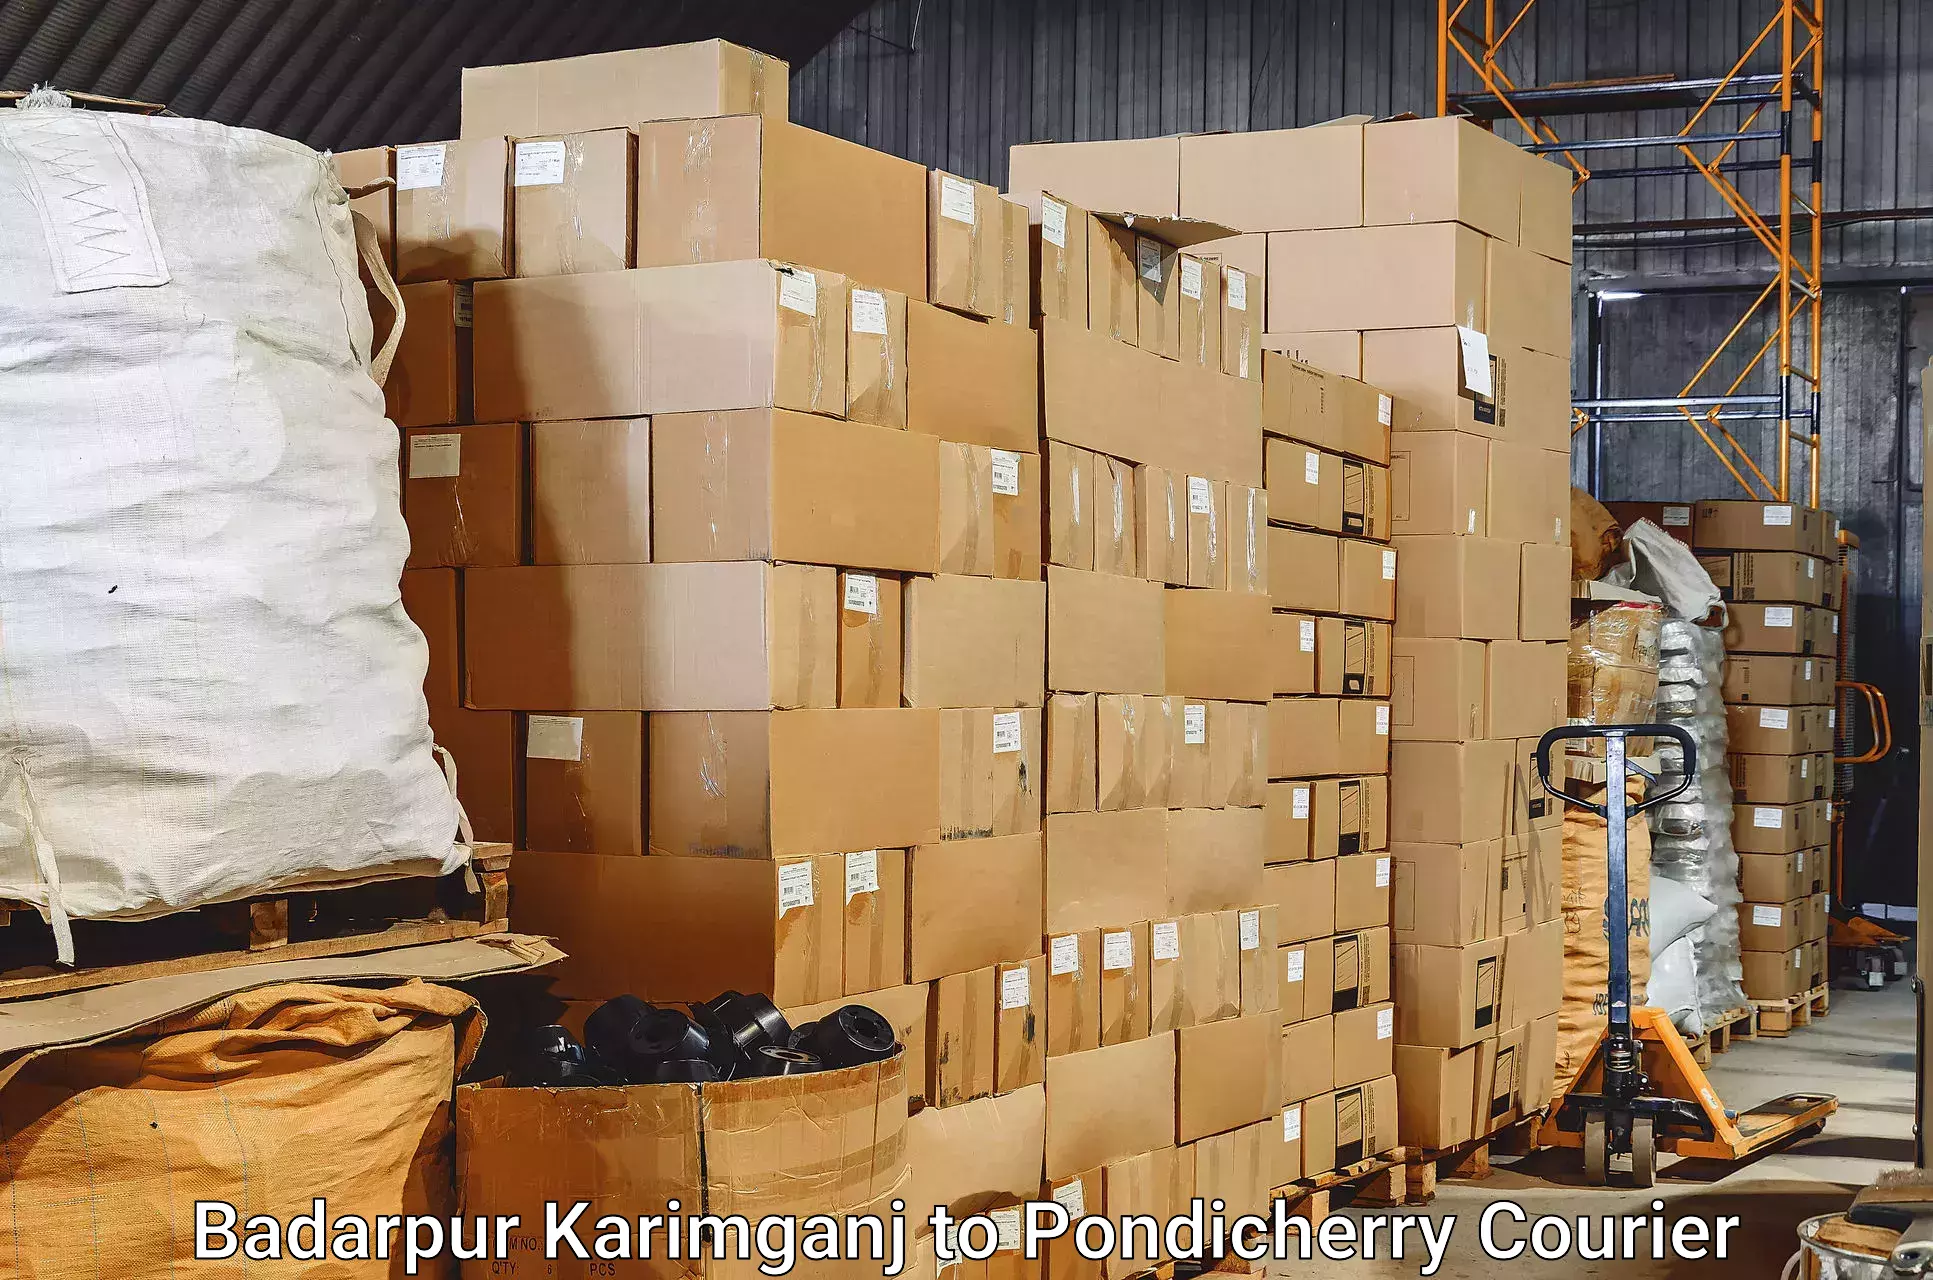 Luggage shipment tracking Badarpur Karimganj to Pondicherry University